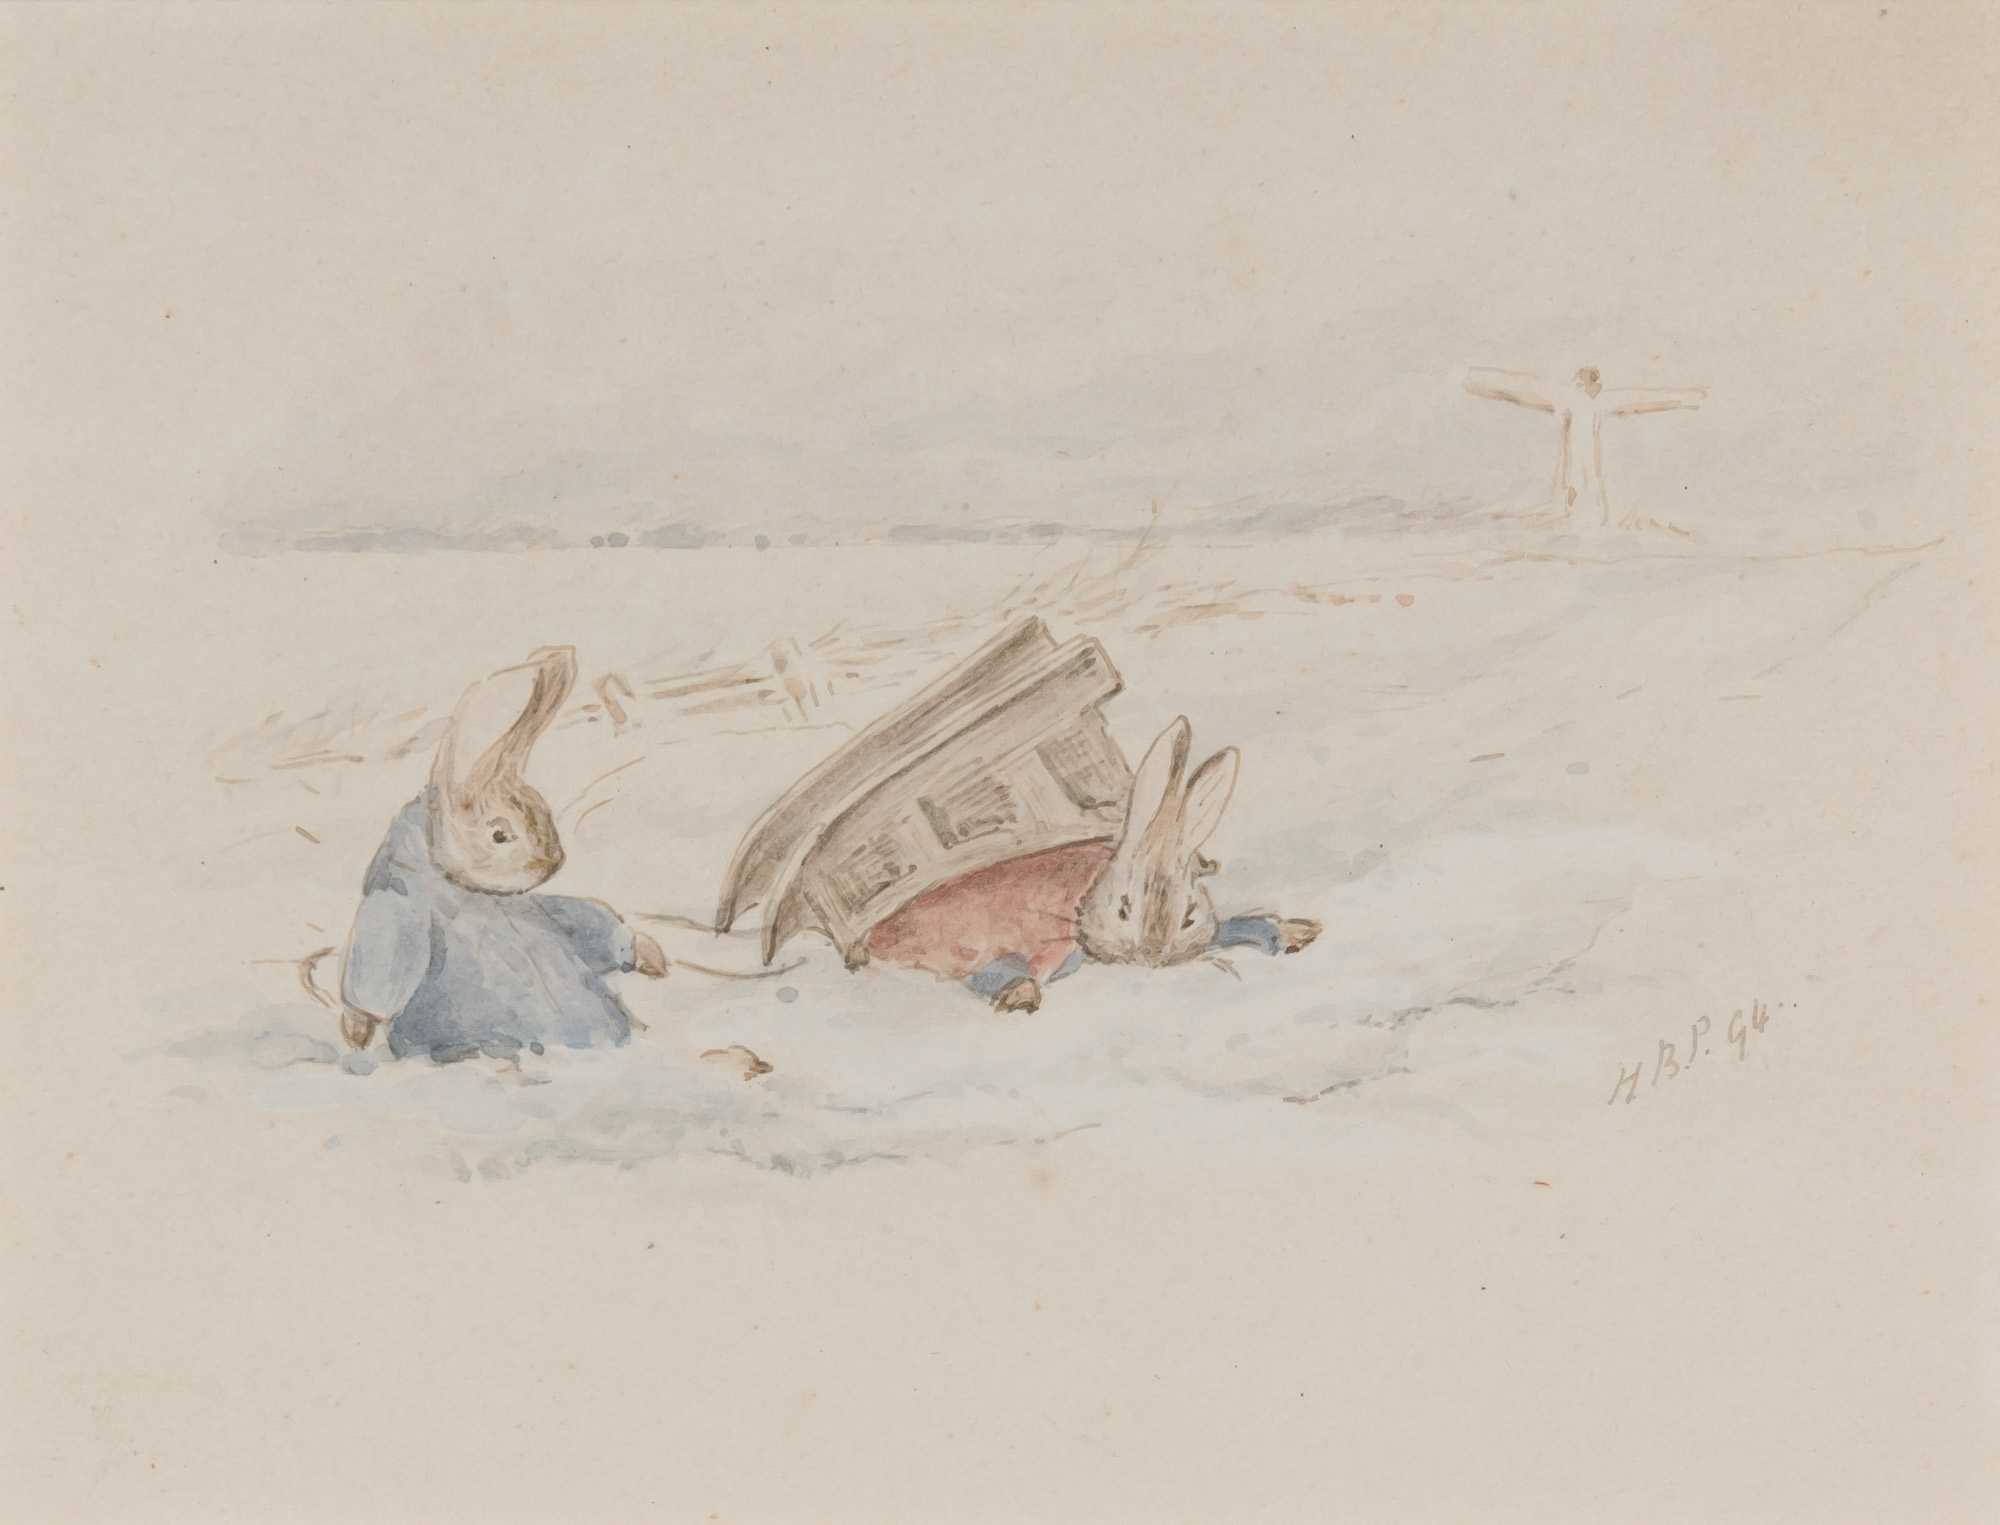 Trineo de Peter Rabbit by Beatrix Potter - 1907 - 9 x 11 cm Colección privada